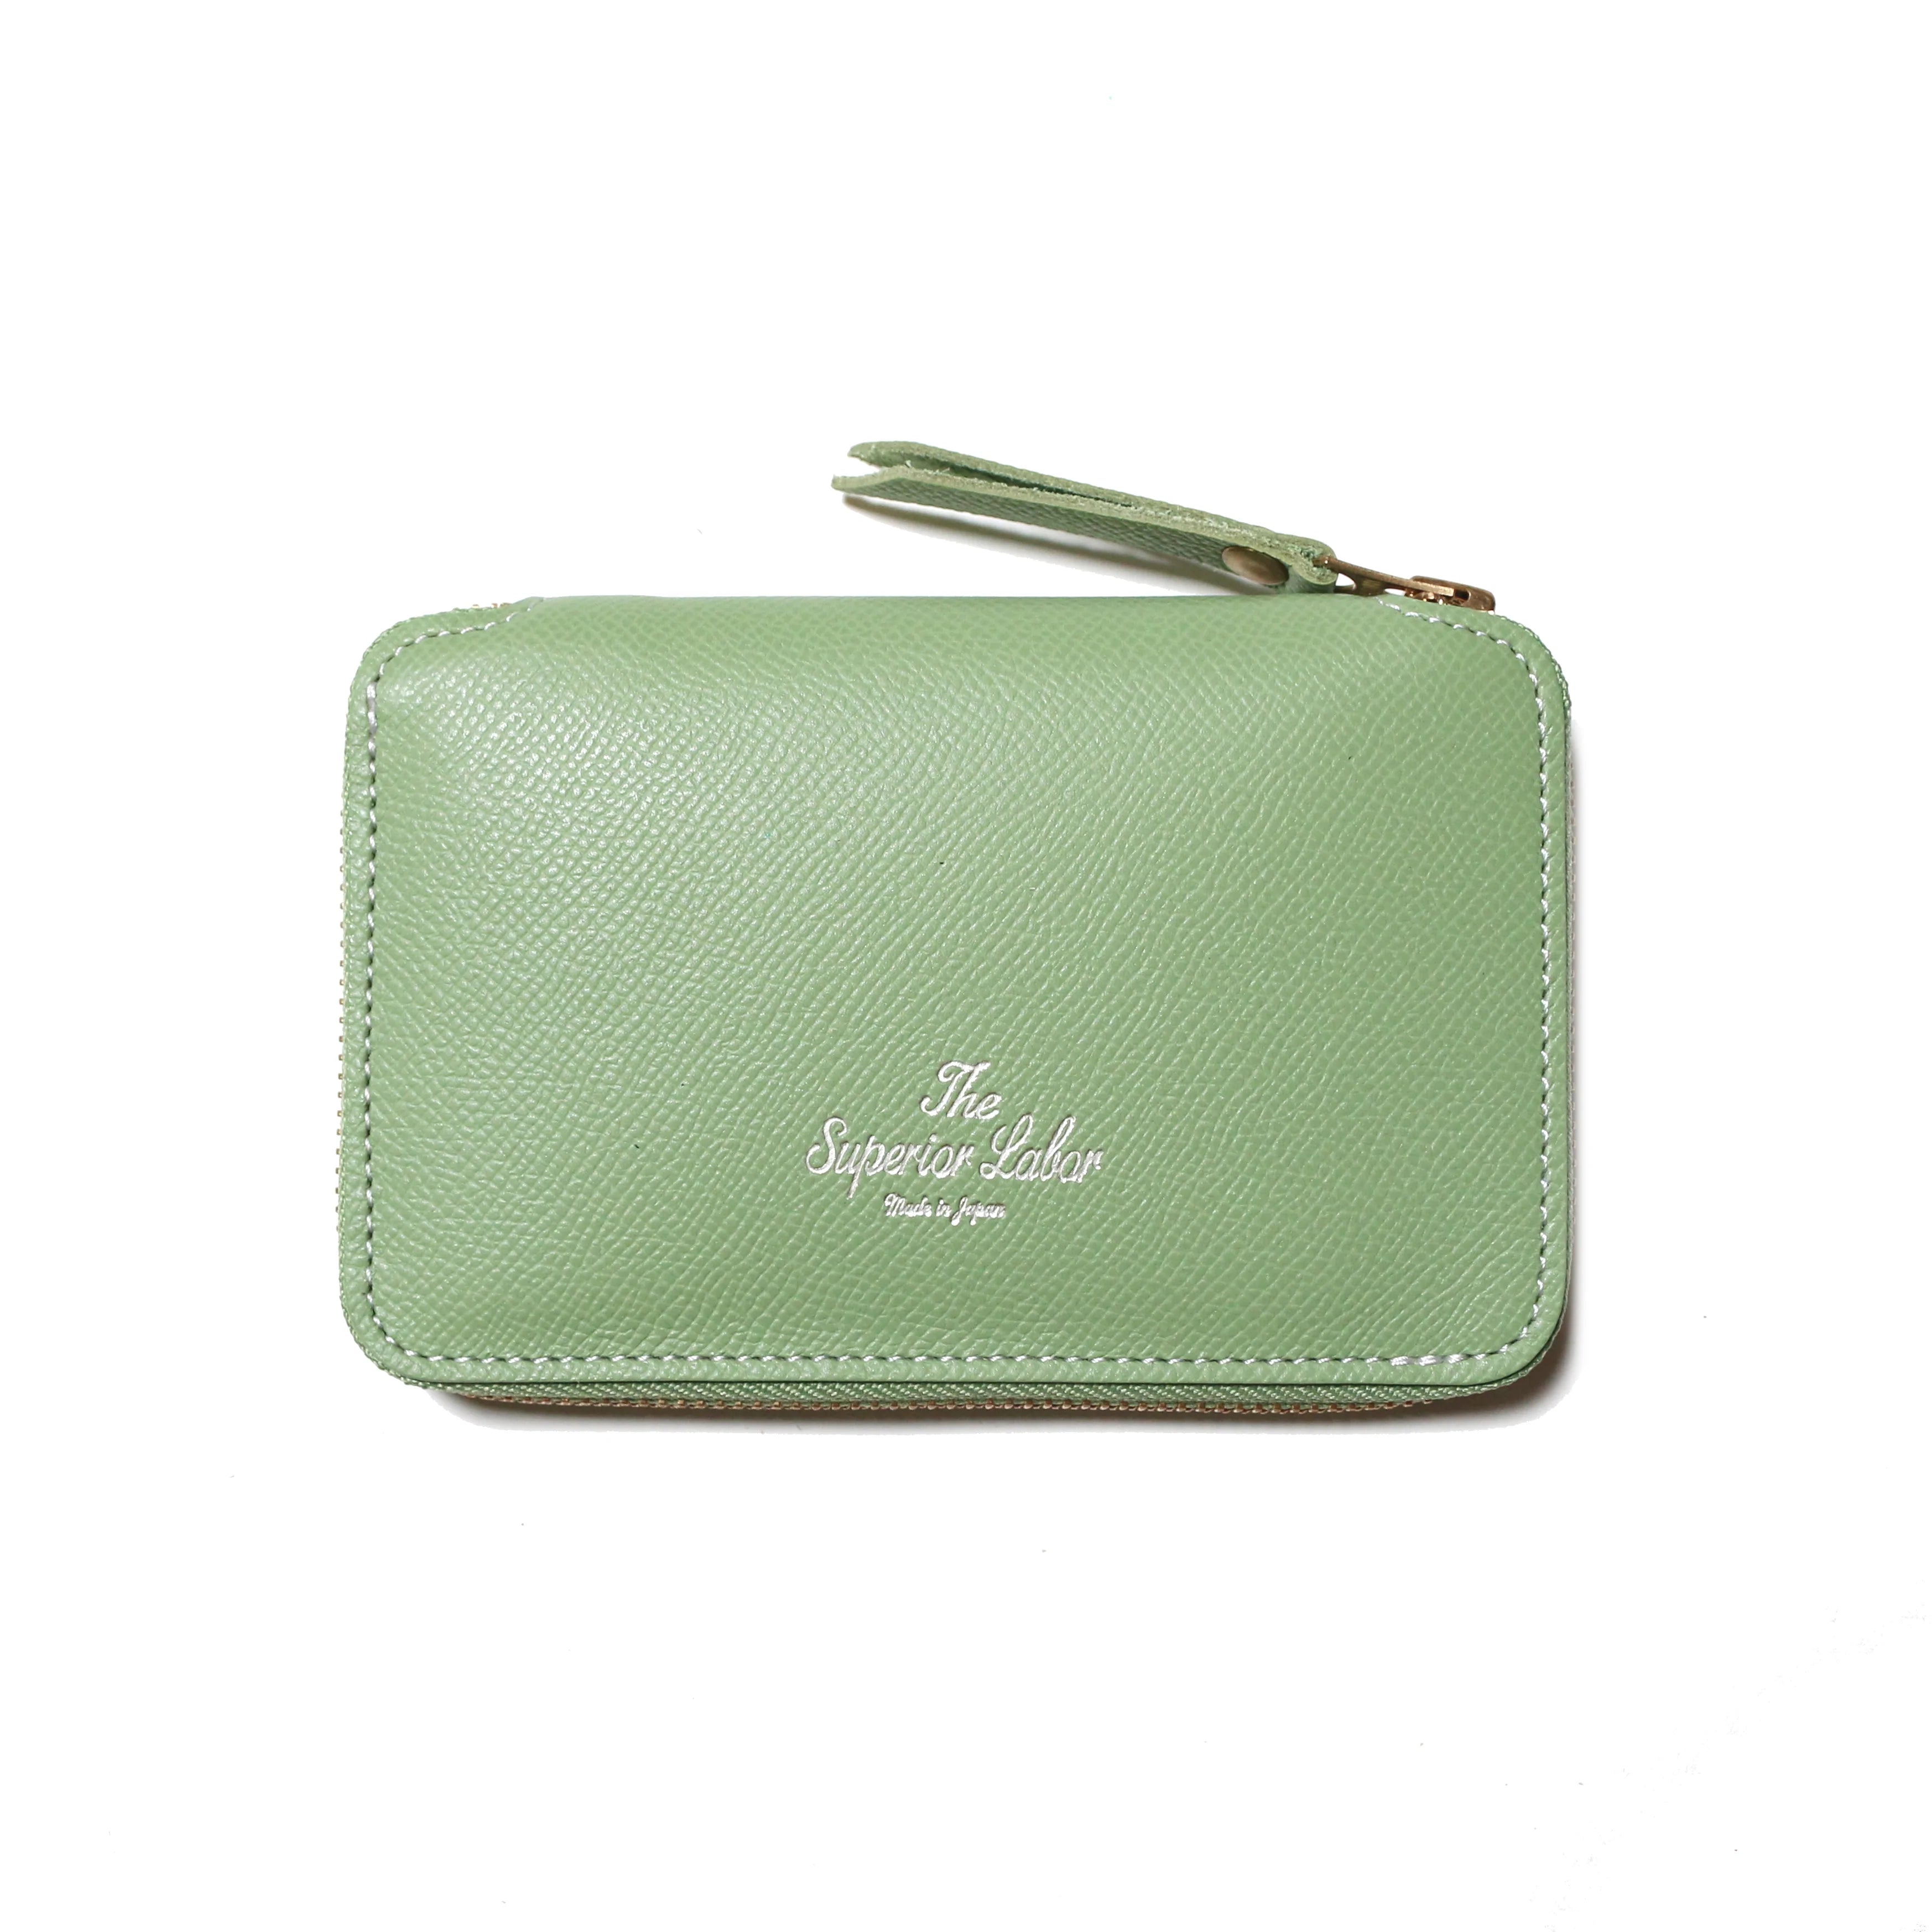 SL0801 Calf Zip Middle Wallet